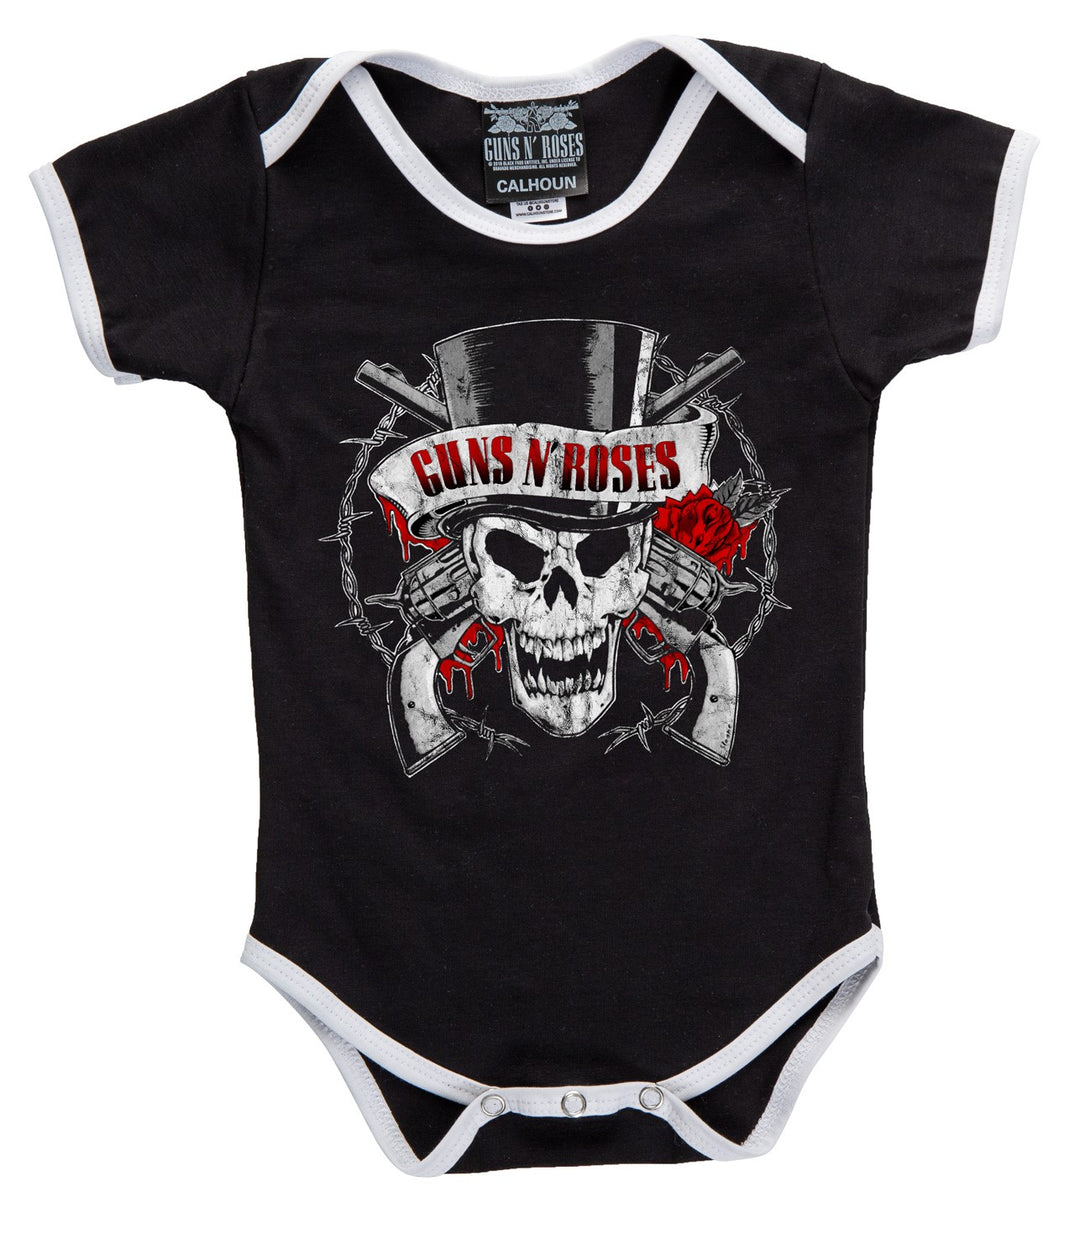 Guns N Roses Top Hat Skull Baby Onesie, Short Sleeve.